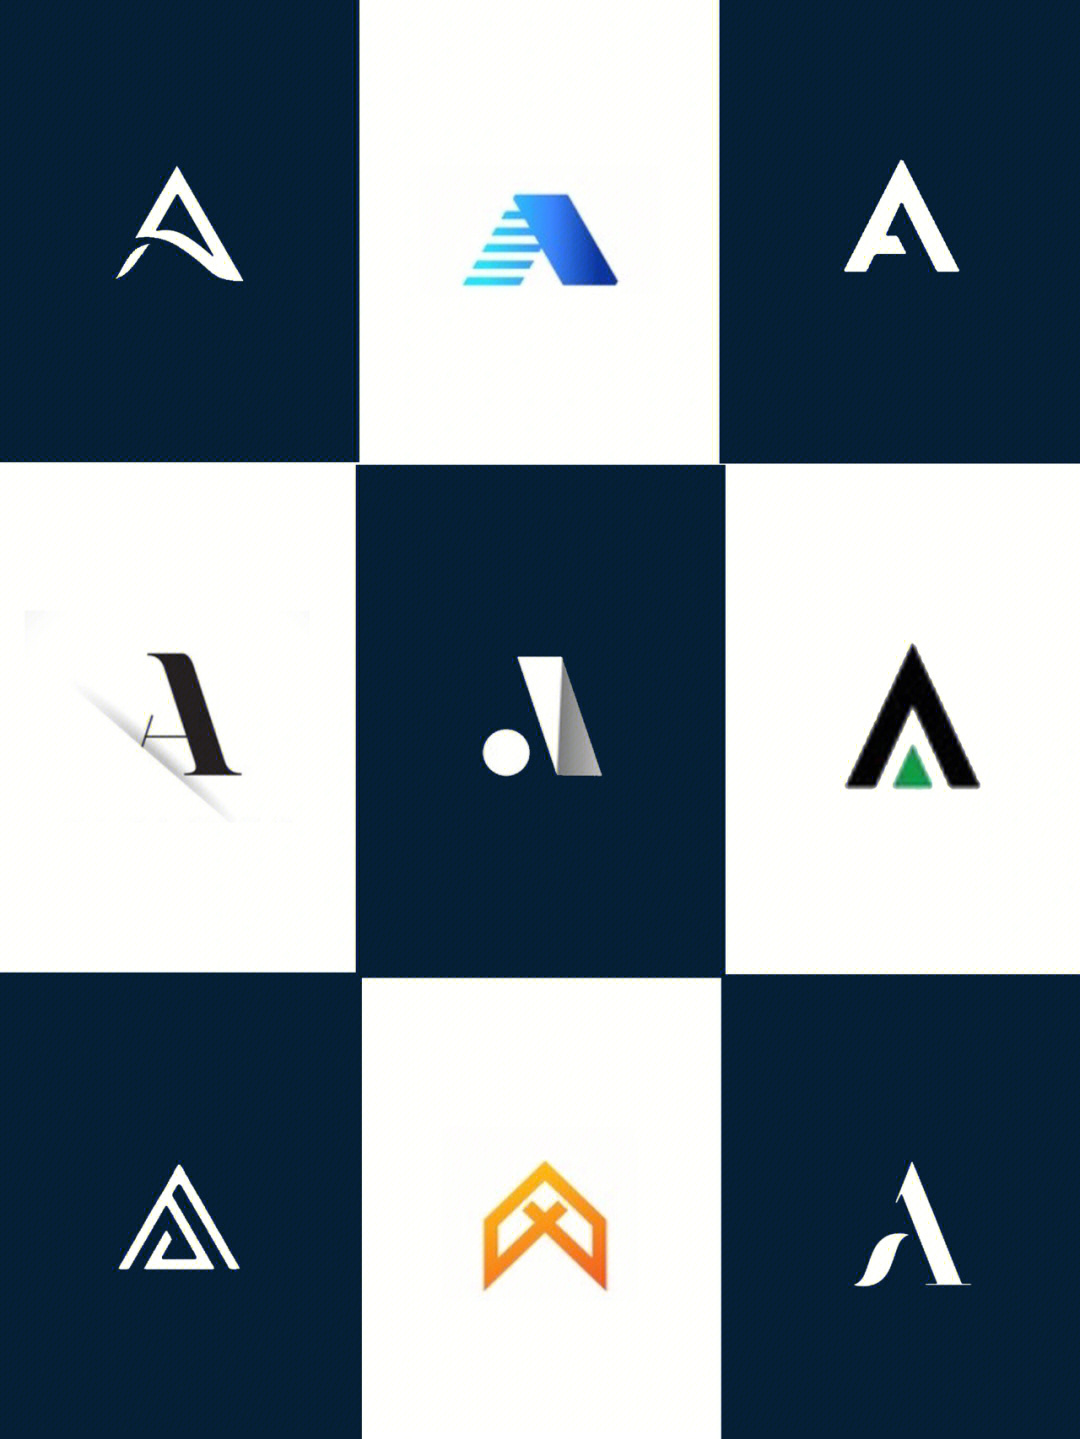 字母a的变形logo设计案例欣赏分享合集